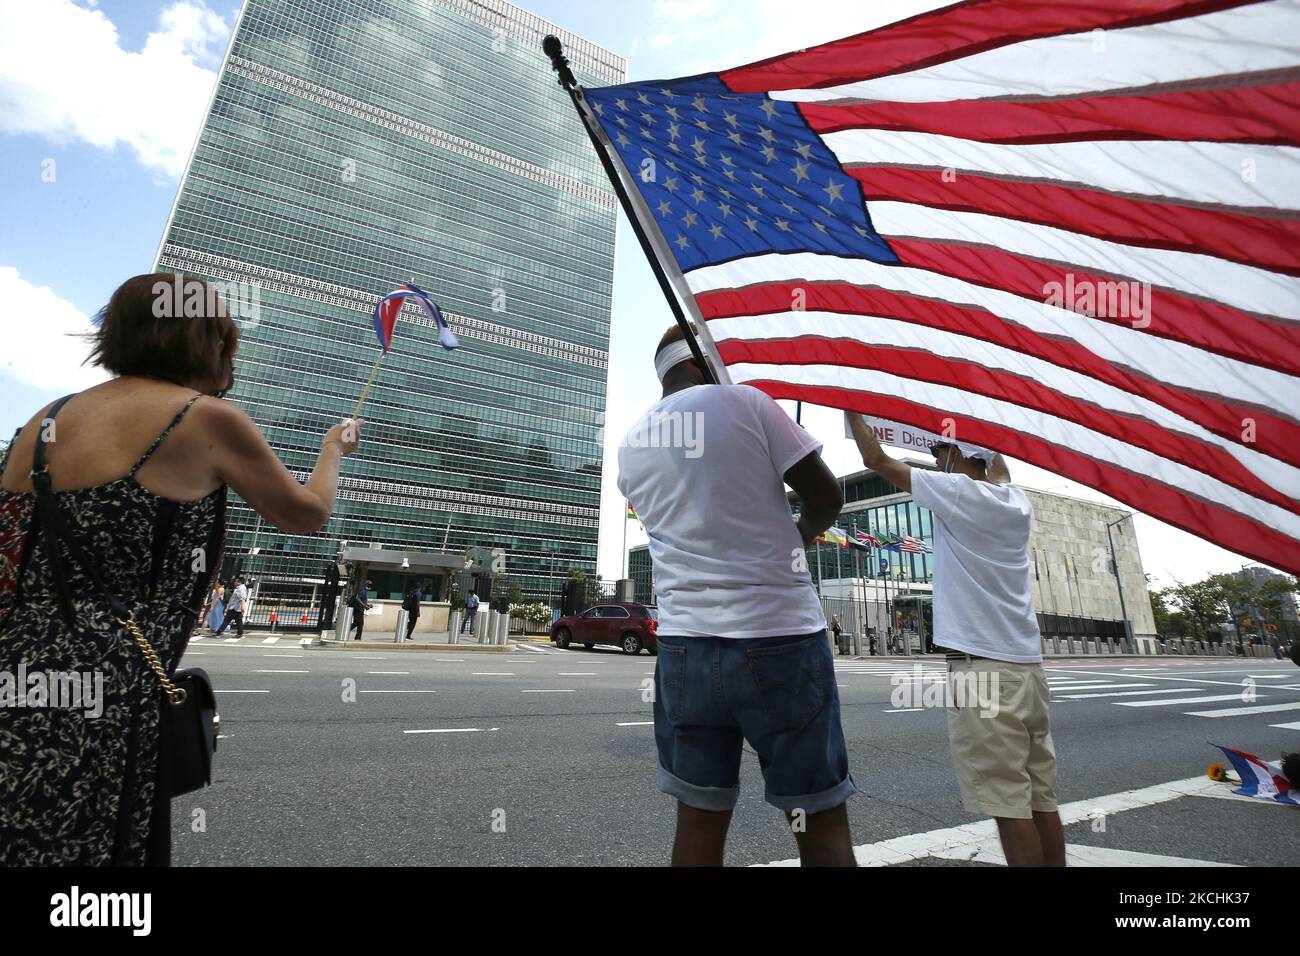 Die kubanischen New Yorker demonstrieren vor den Vereinten Nationen am 23. Juli 2021 in New York City, USA, zur Unterstützung derer, die für die Befreiung ihres Landes kämpfen. Die Demonstrationen werden immer gewalttätiger, da Kuba unter einer repressiven Regierung unter Mangel an Nahrungsmitteln und Medikamenten zu leiden hat. (Foto von John Lamparski/NurPhoto) Stockfoto